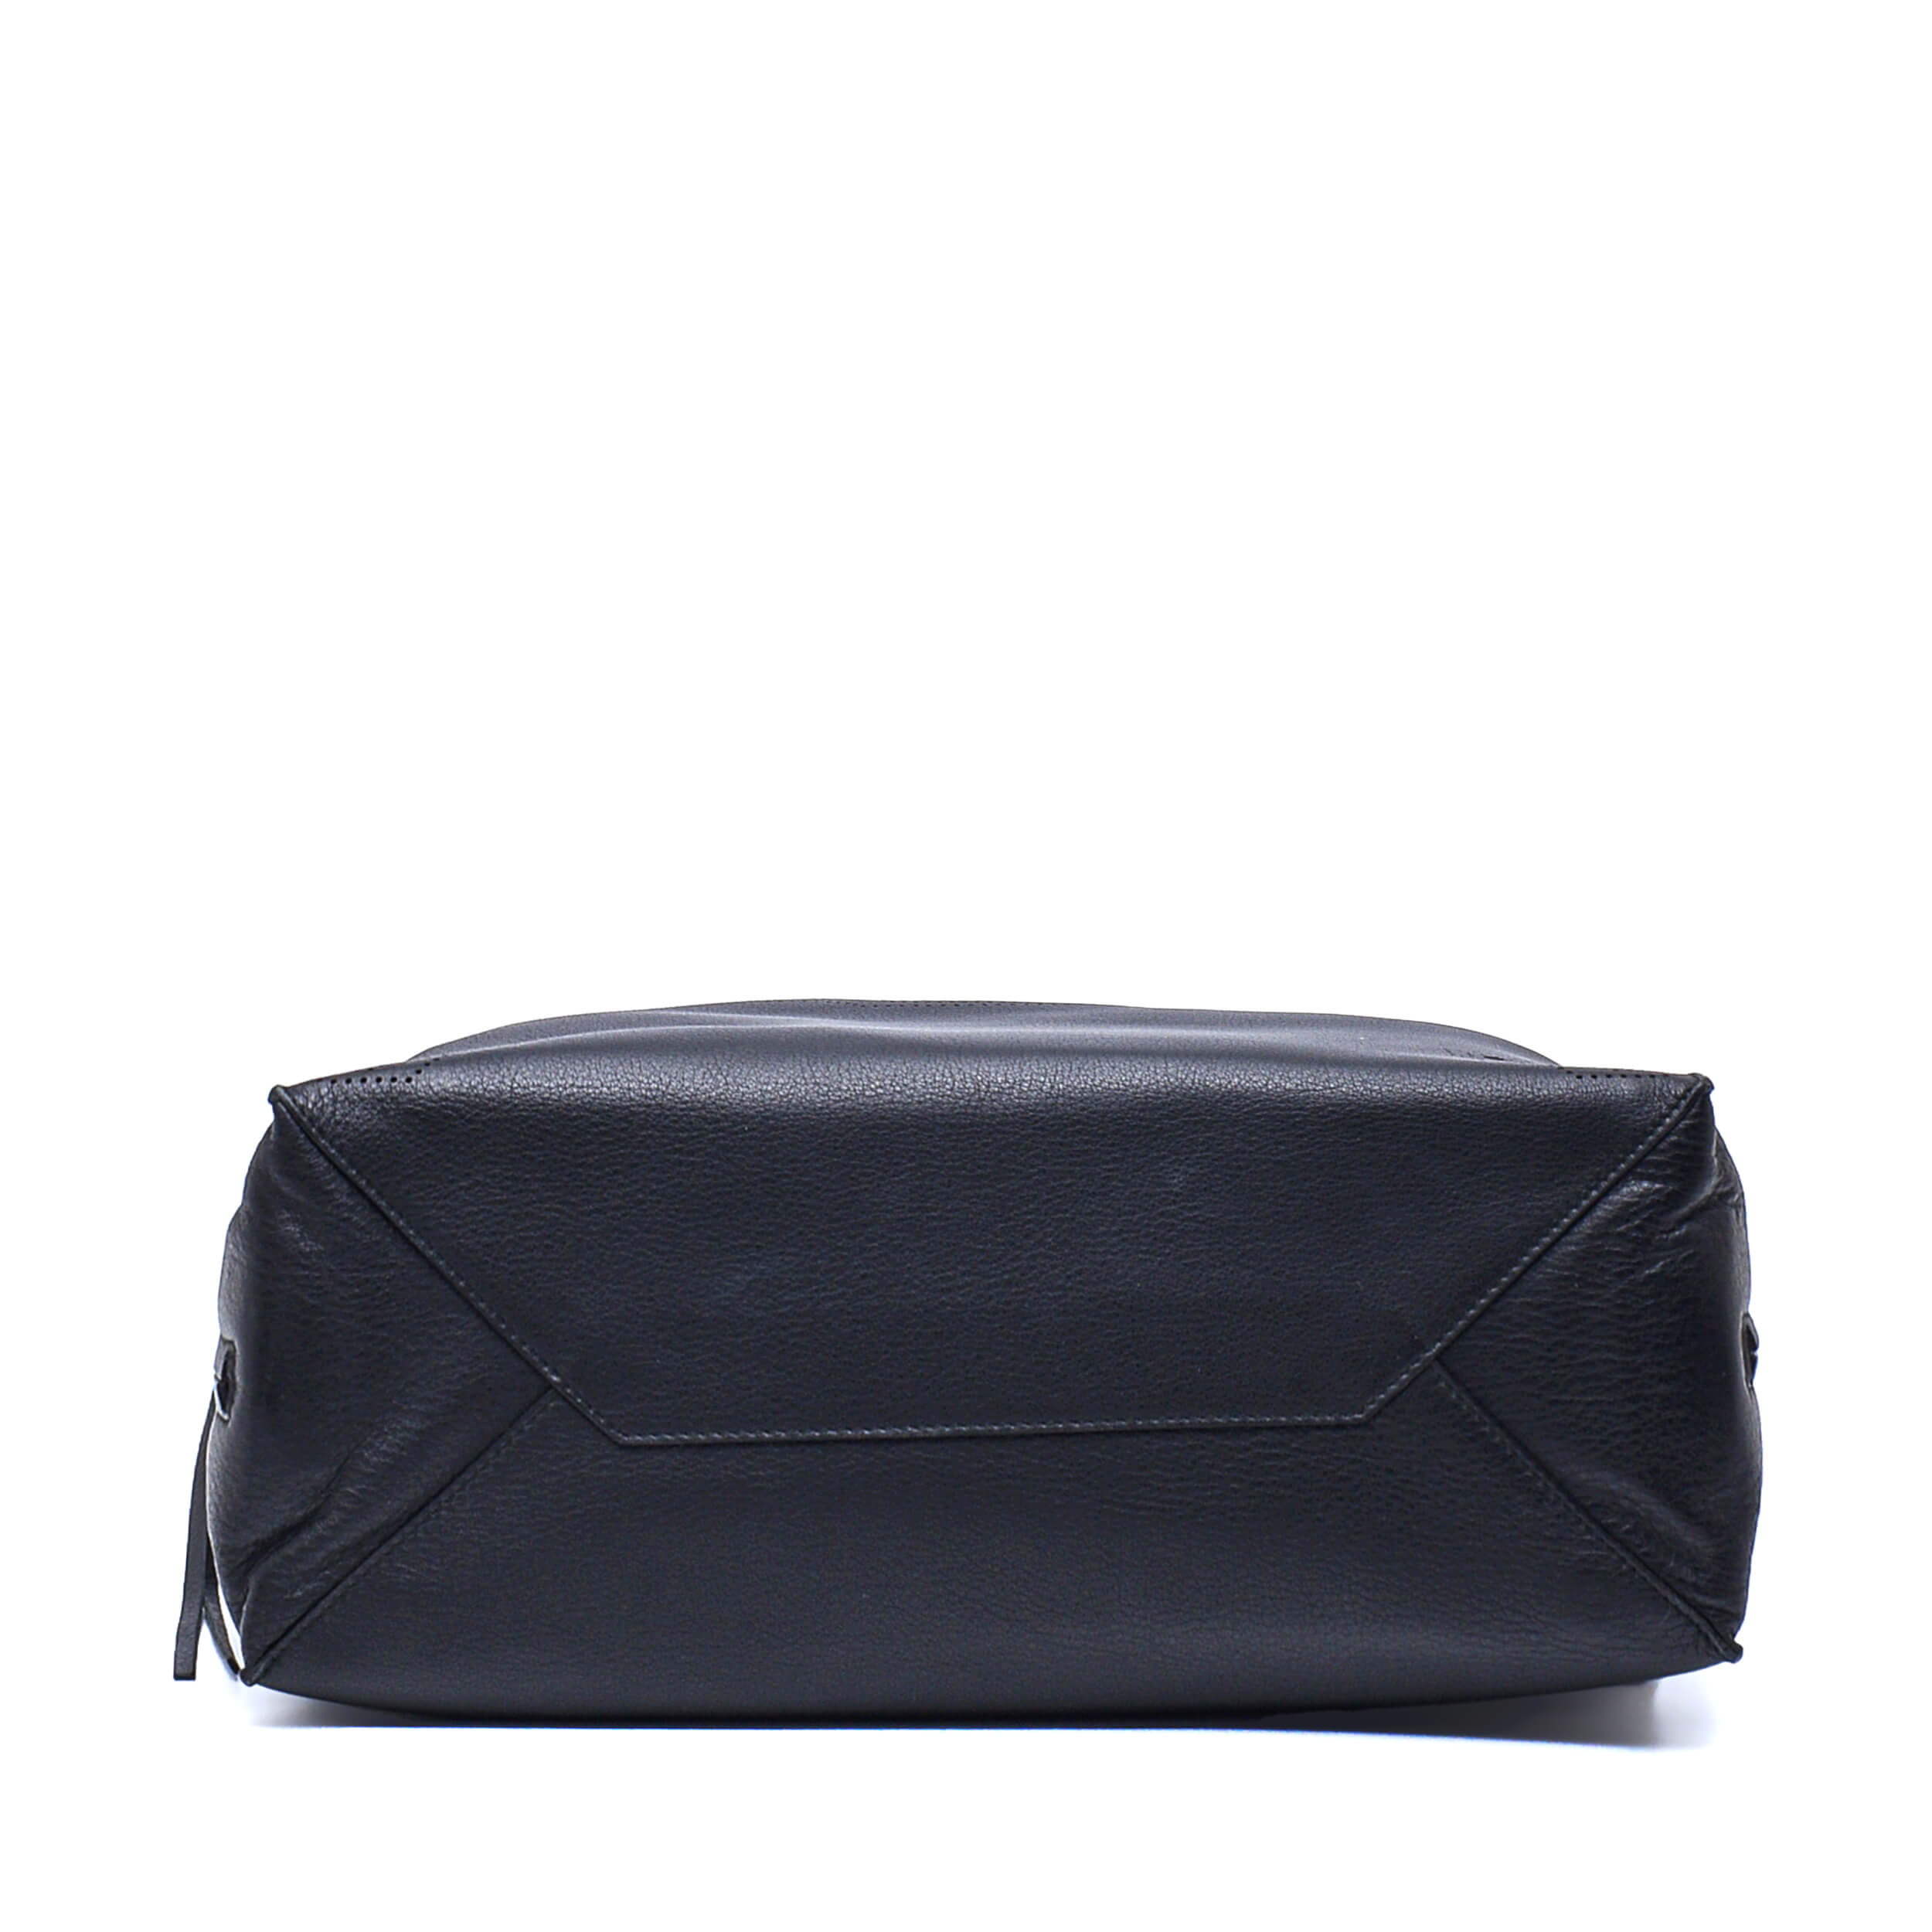 Balenciaga - Blackout Papier A6 Zip Around Leather Bag